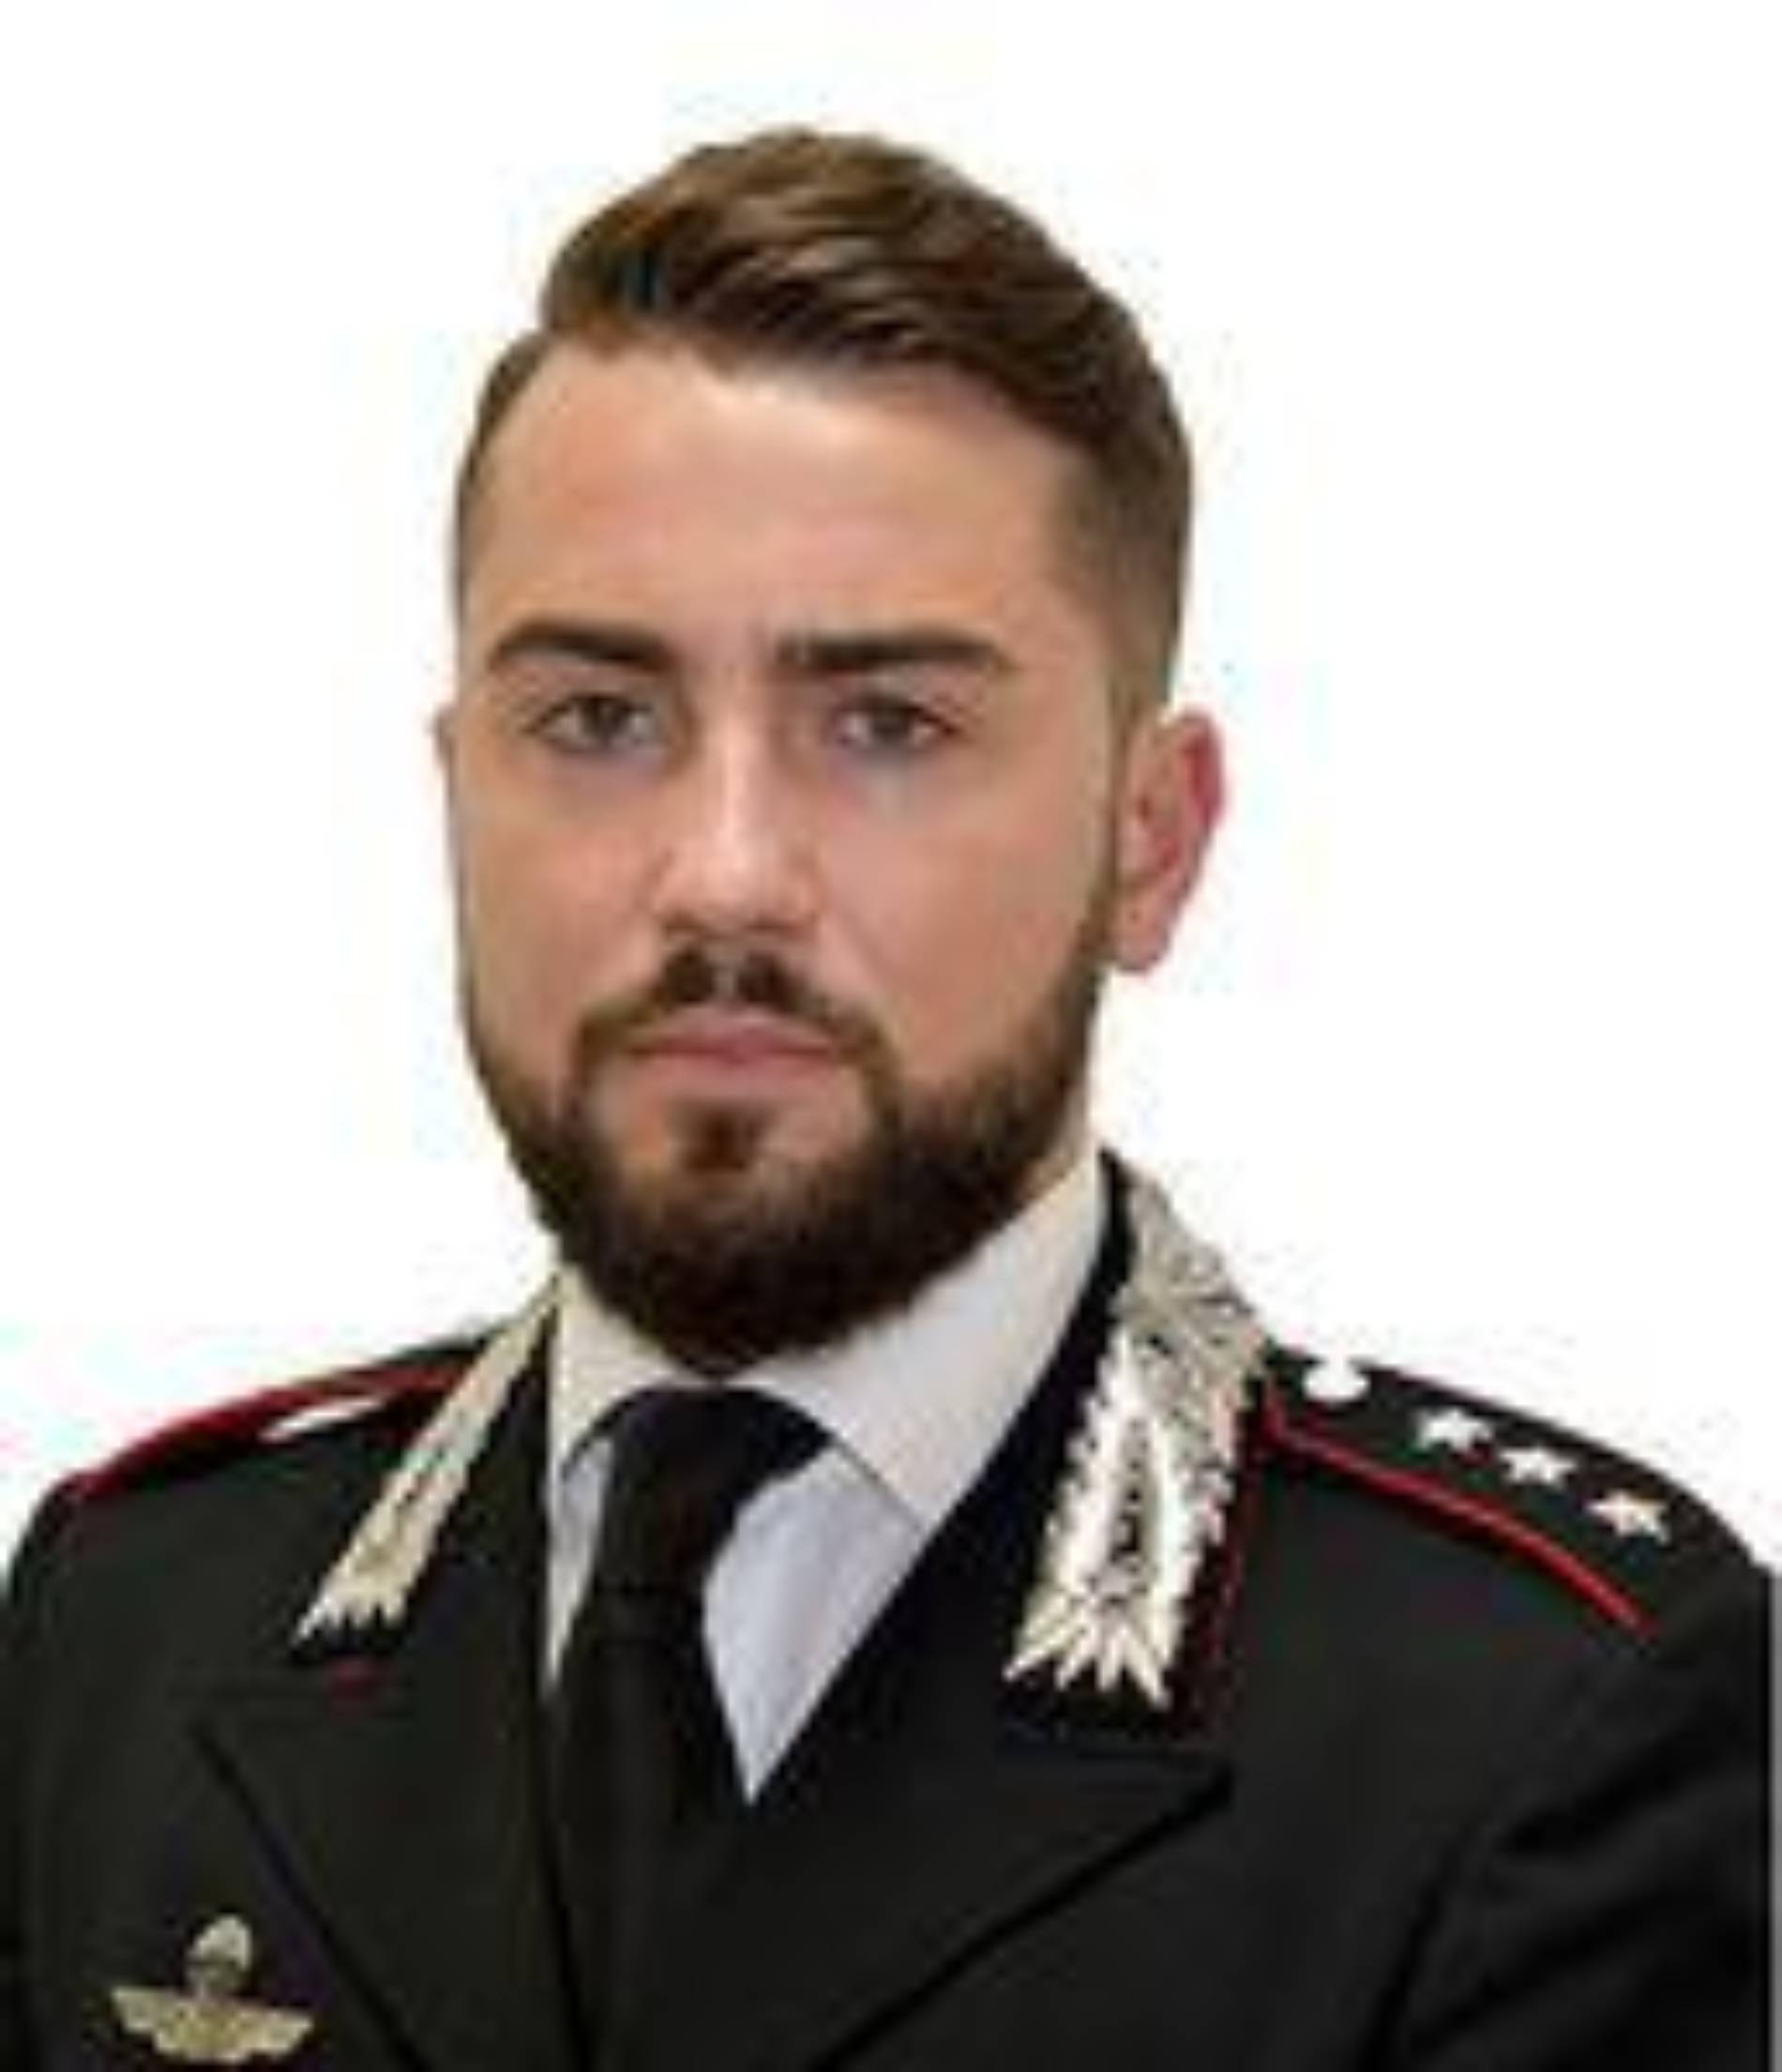 Nicosia (en), Il capitano Marco Di Donna e’ il nuovo comandante della compagnia Carabinieri.